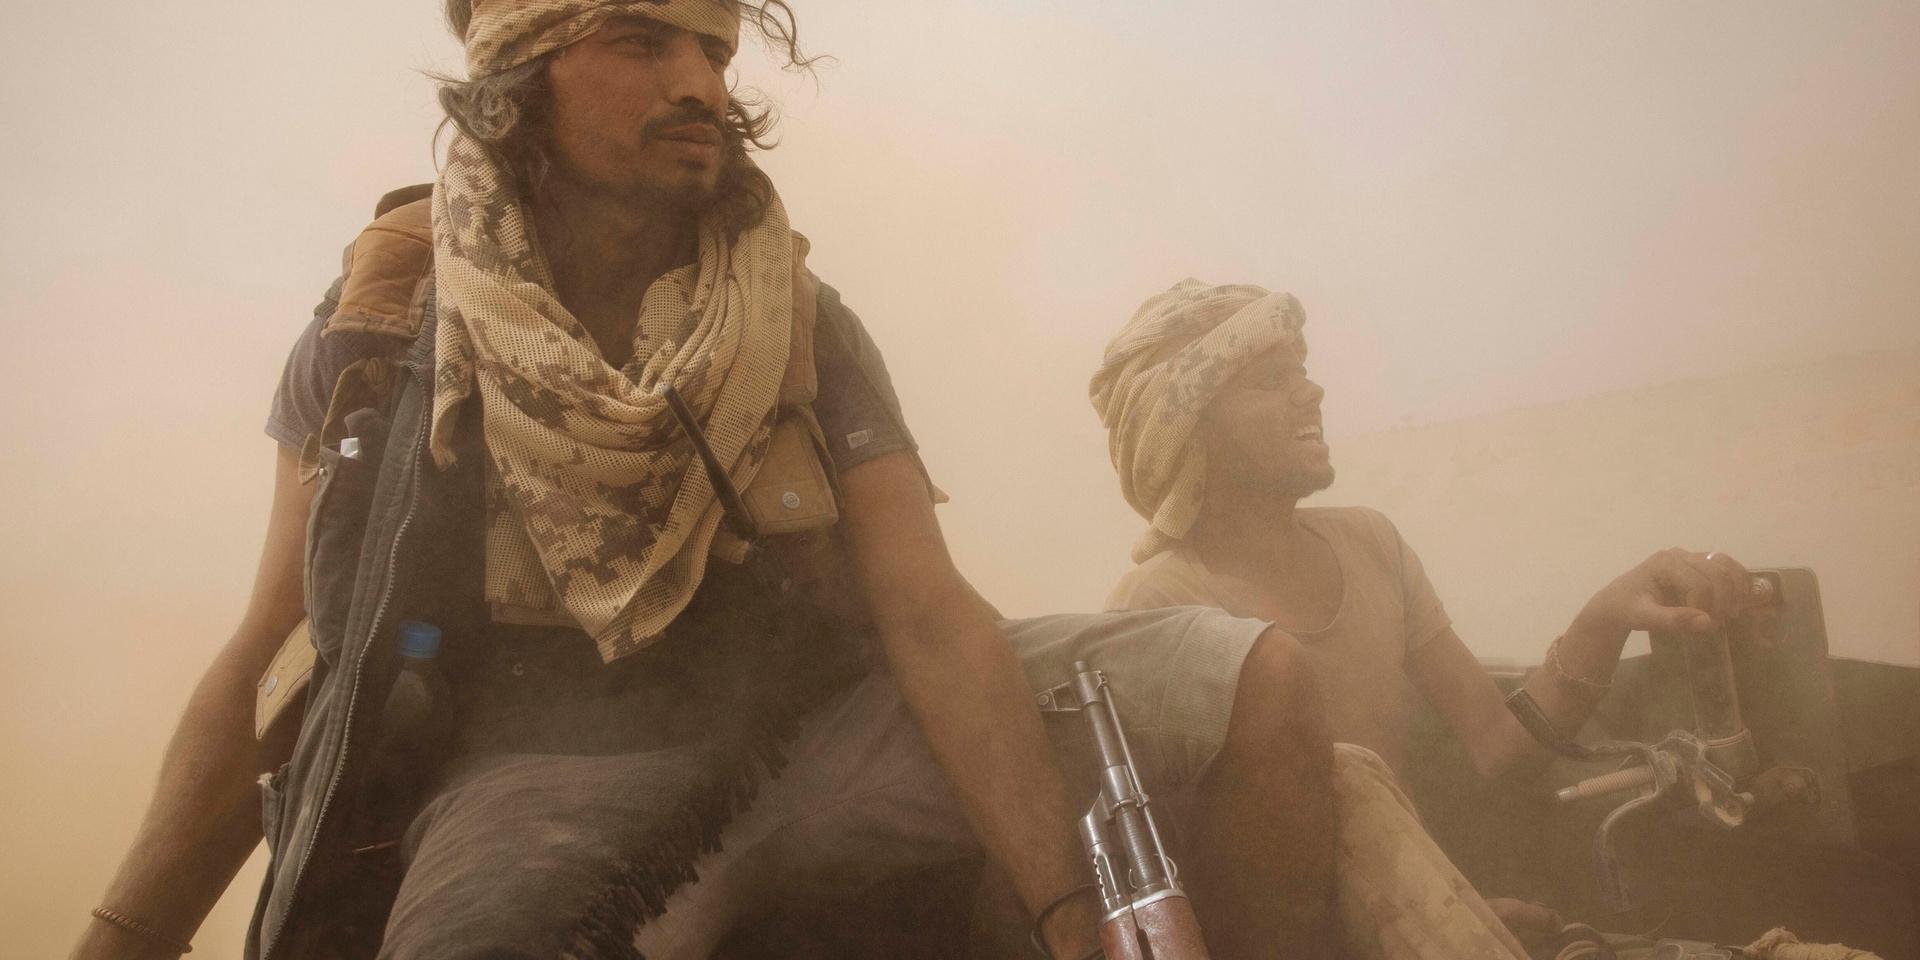 Jemenitiska regeringssoldater nära oljestaden Marib, fotograferade i somras.